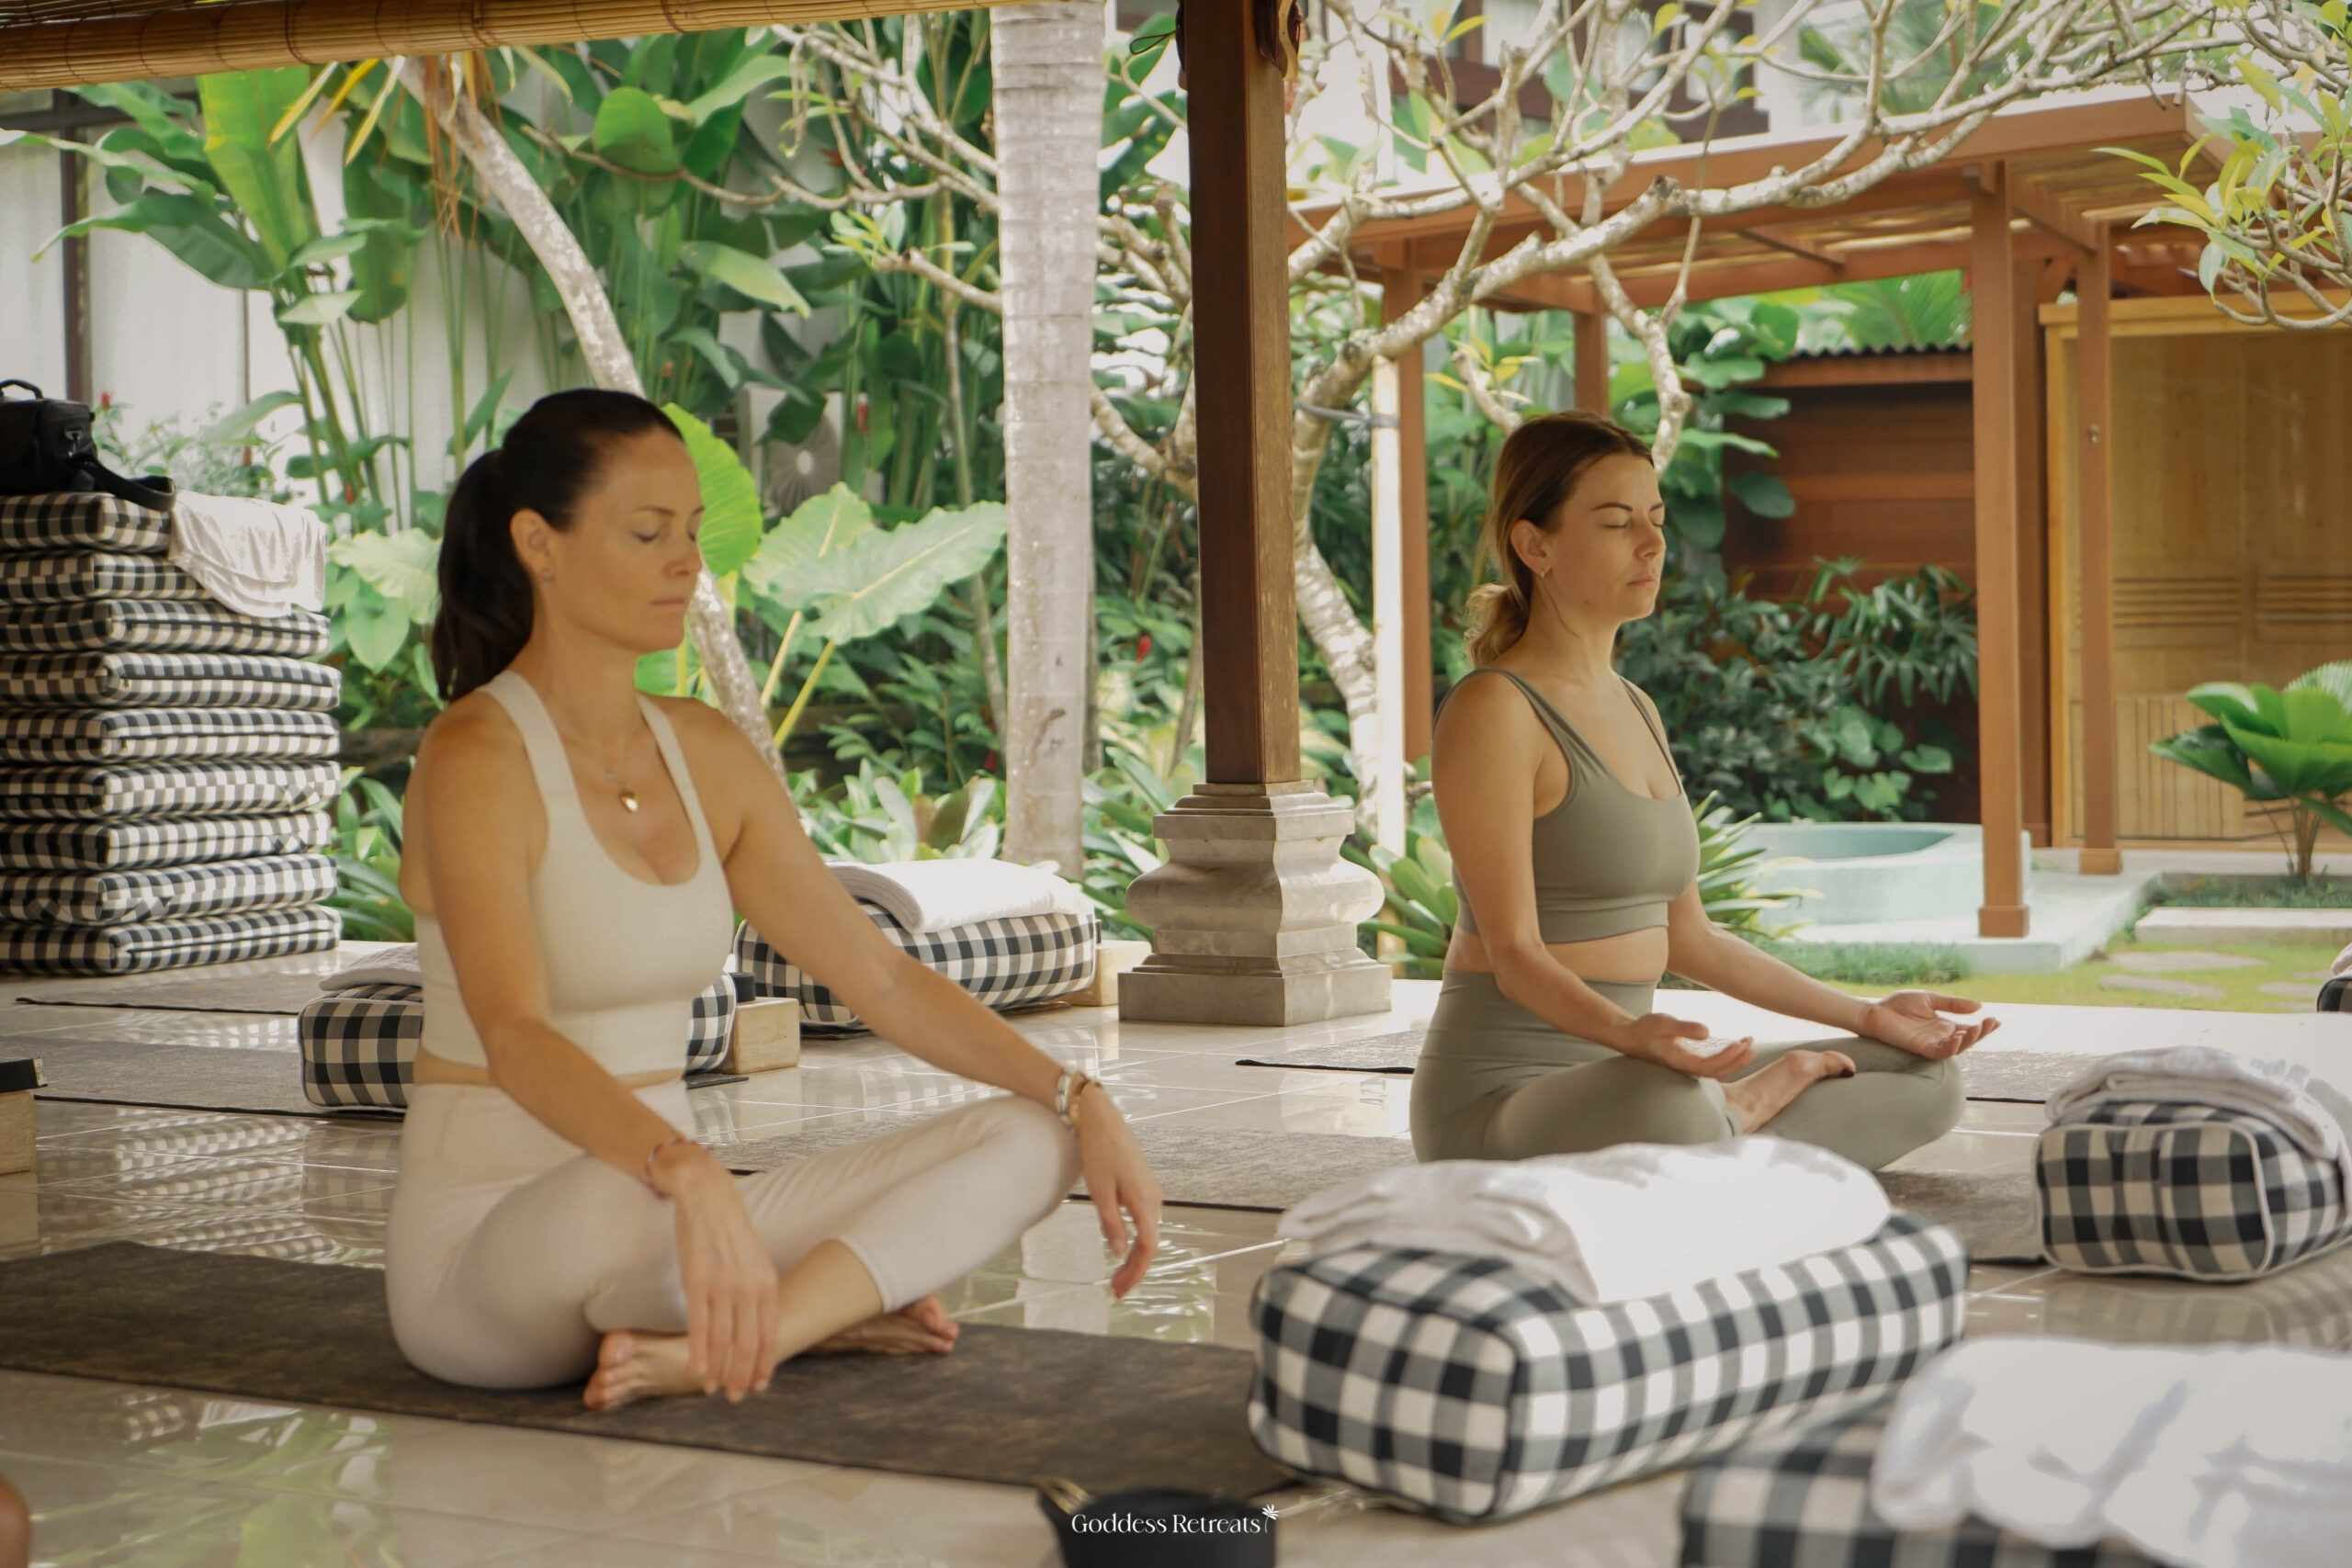 Morning activities: Yoga & Meditation in Ubud